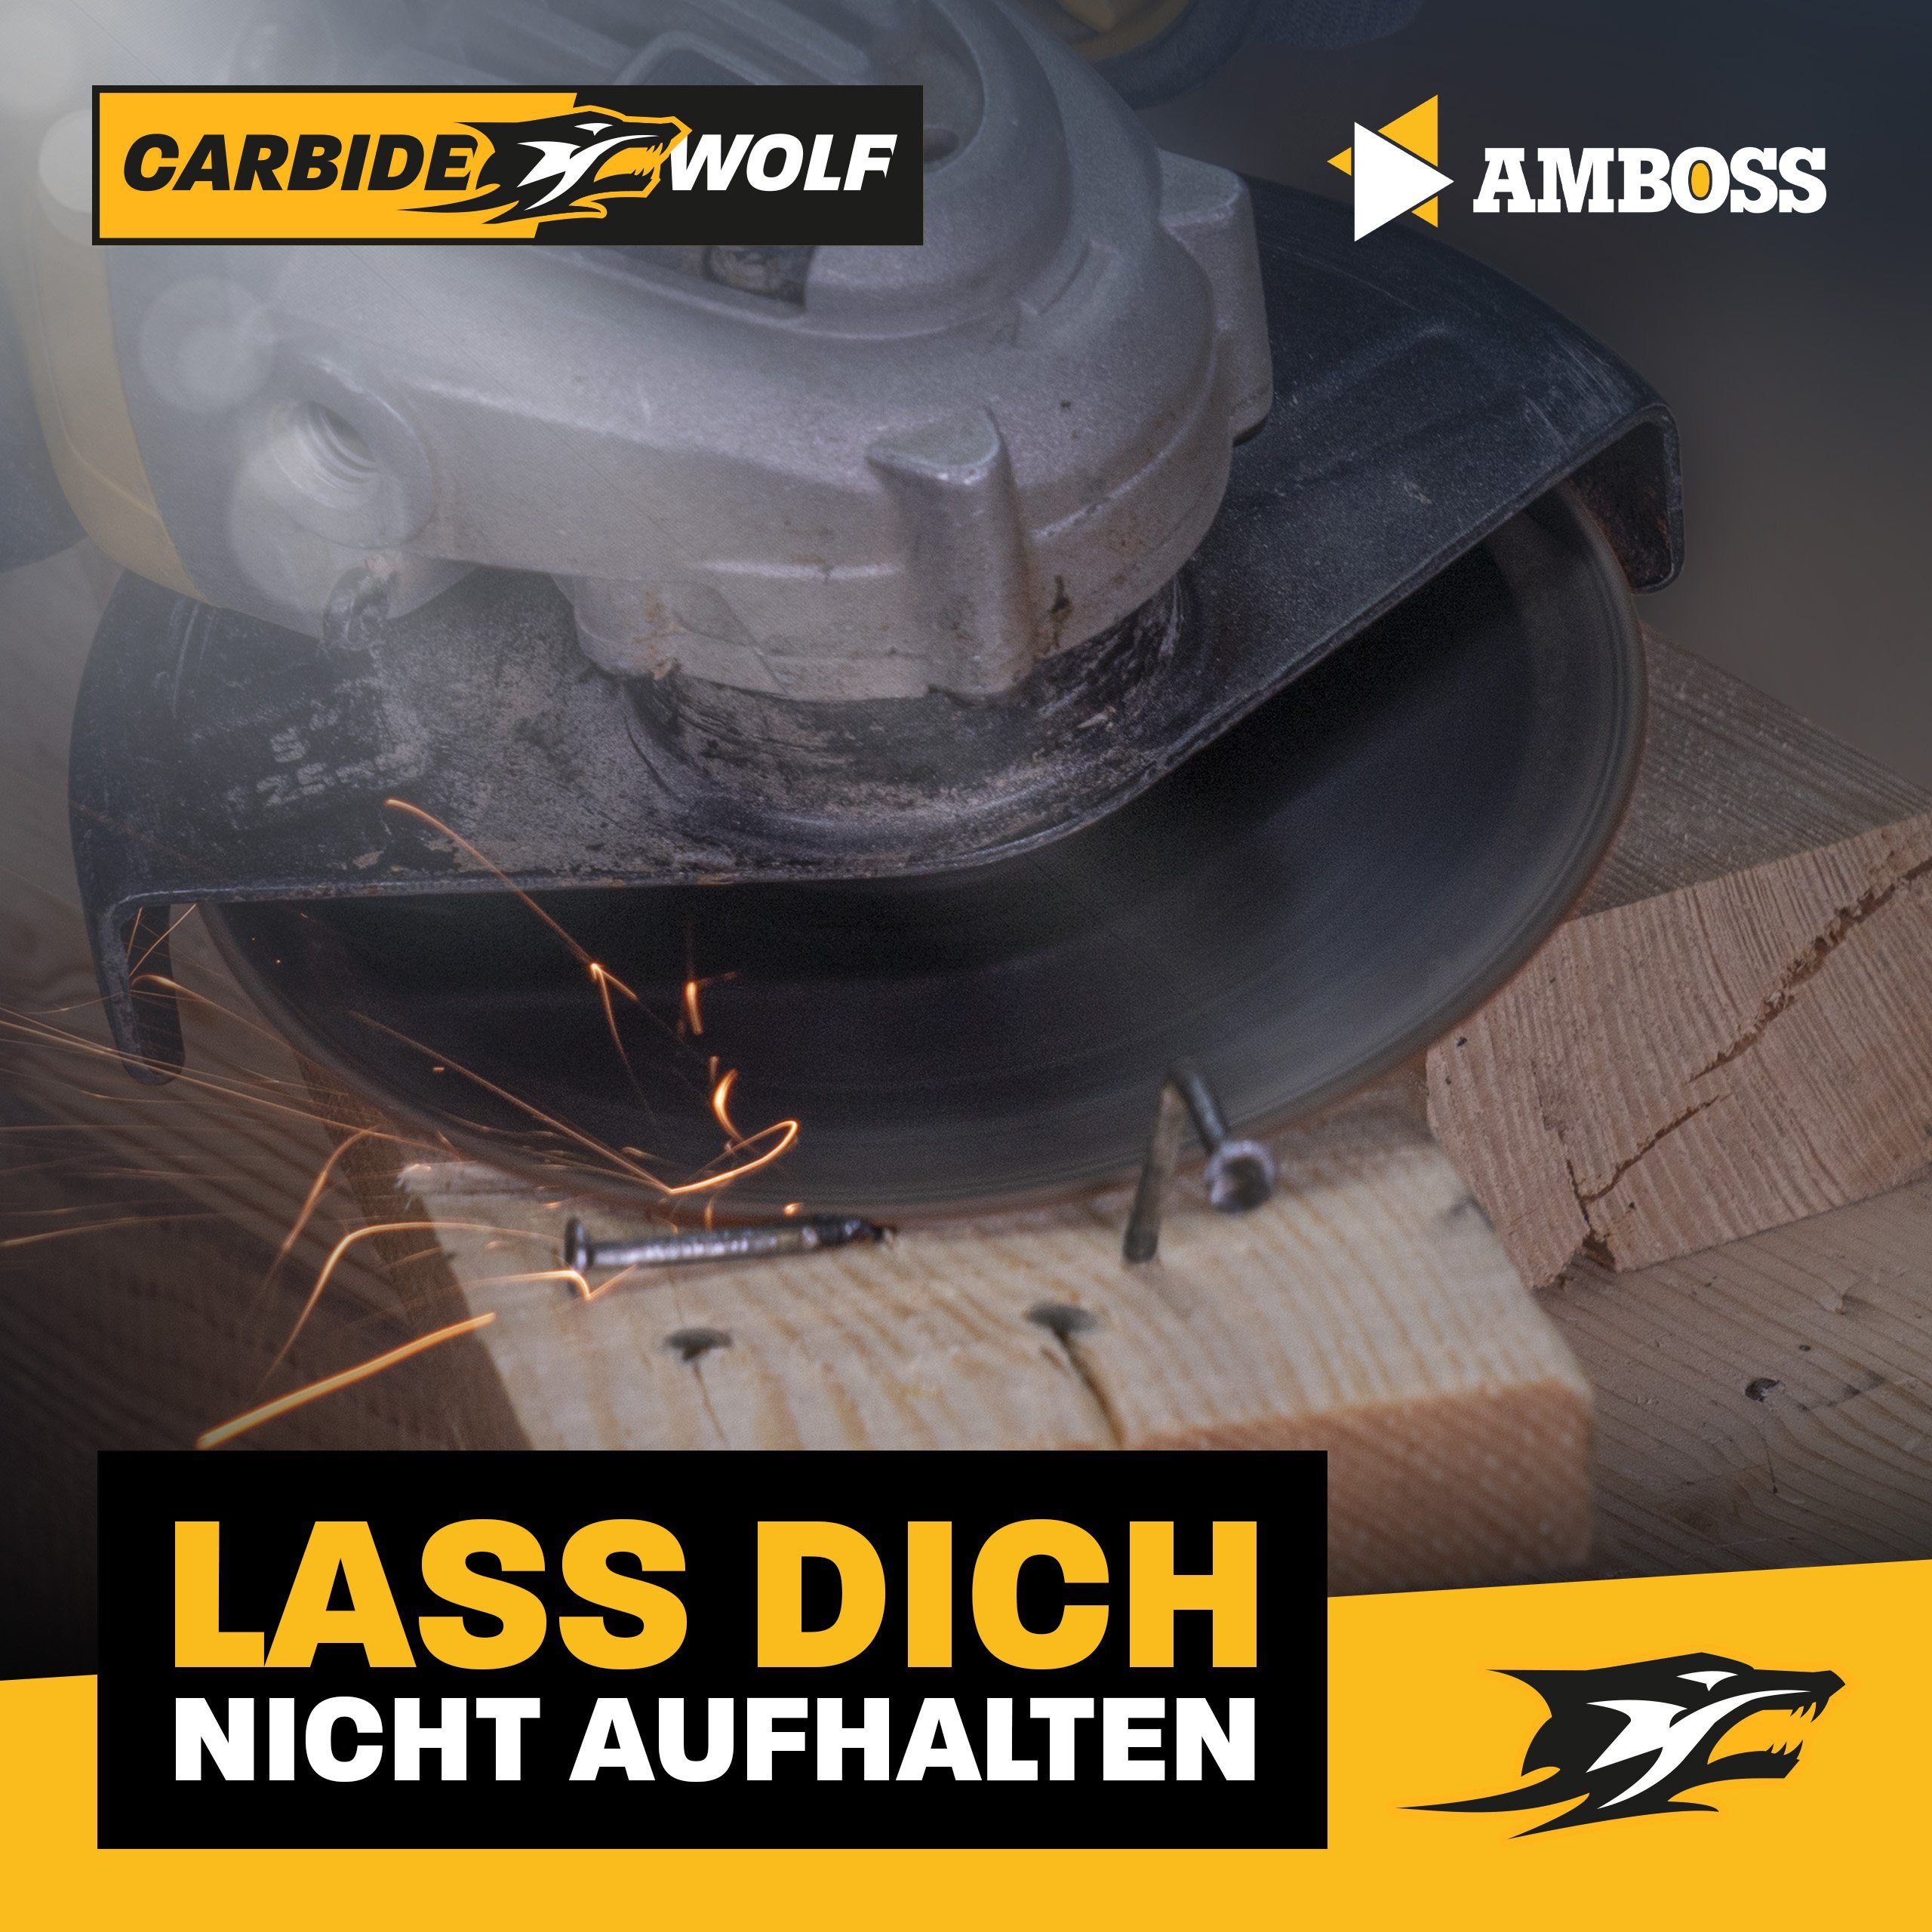 Kreissägeblatt mm Trennscheibe Werkzeuge Carbide HM (Bohrung) Amboss - x Amboss Wolf (Dicke) 22.2 mm 125 1.2 x, 1.2